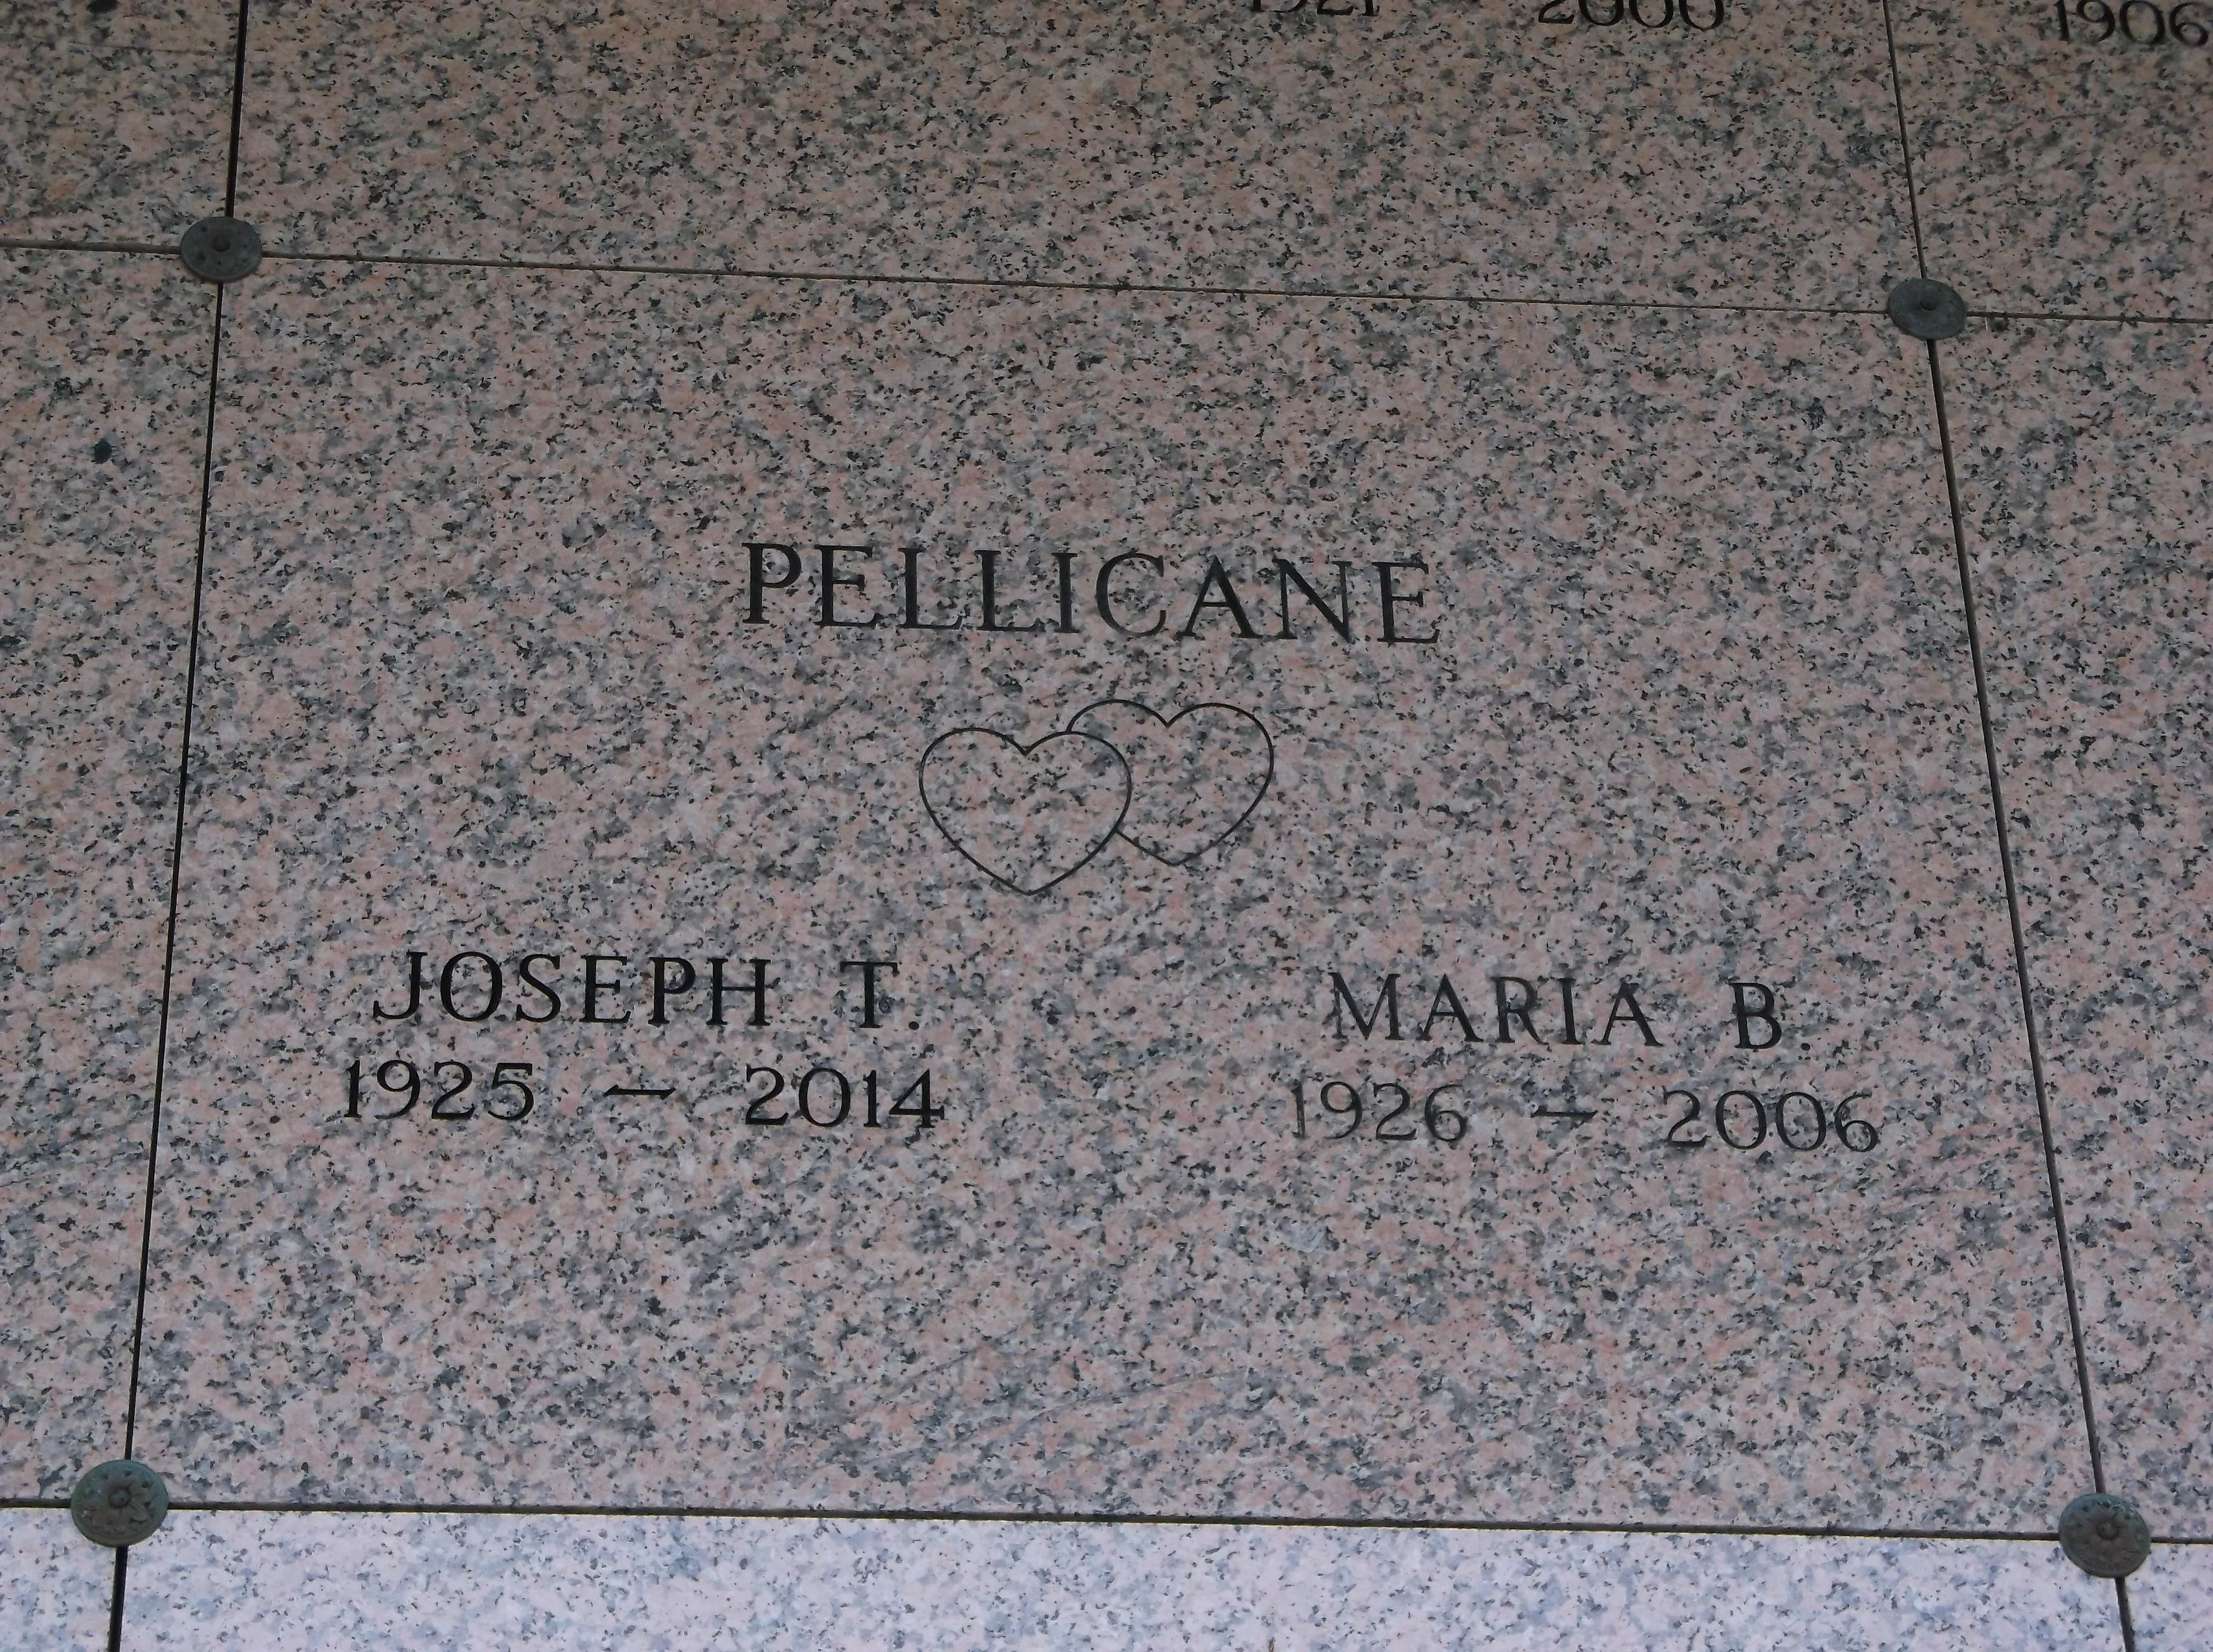 Joseph T Pellicane